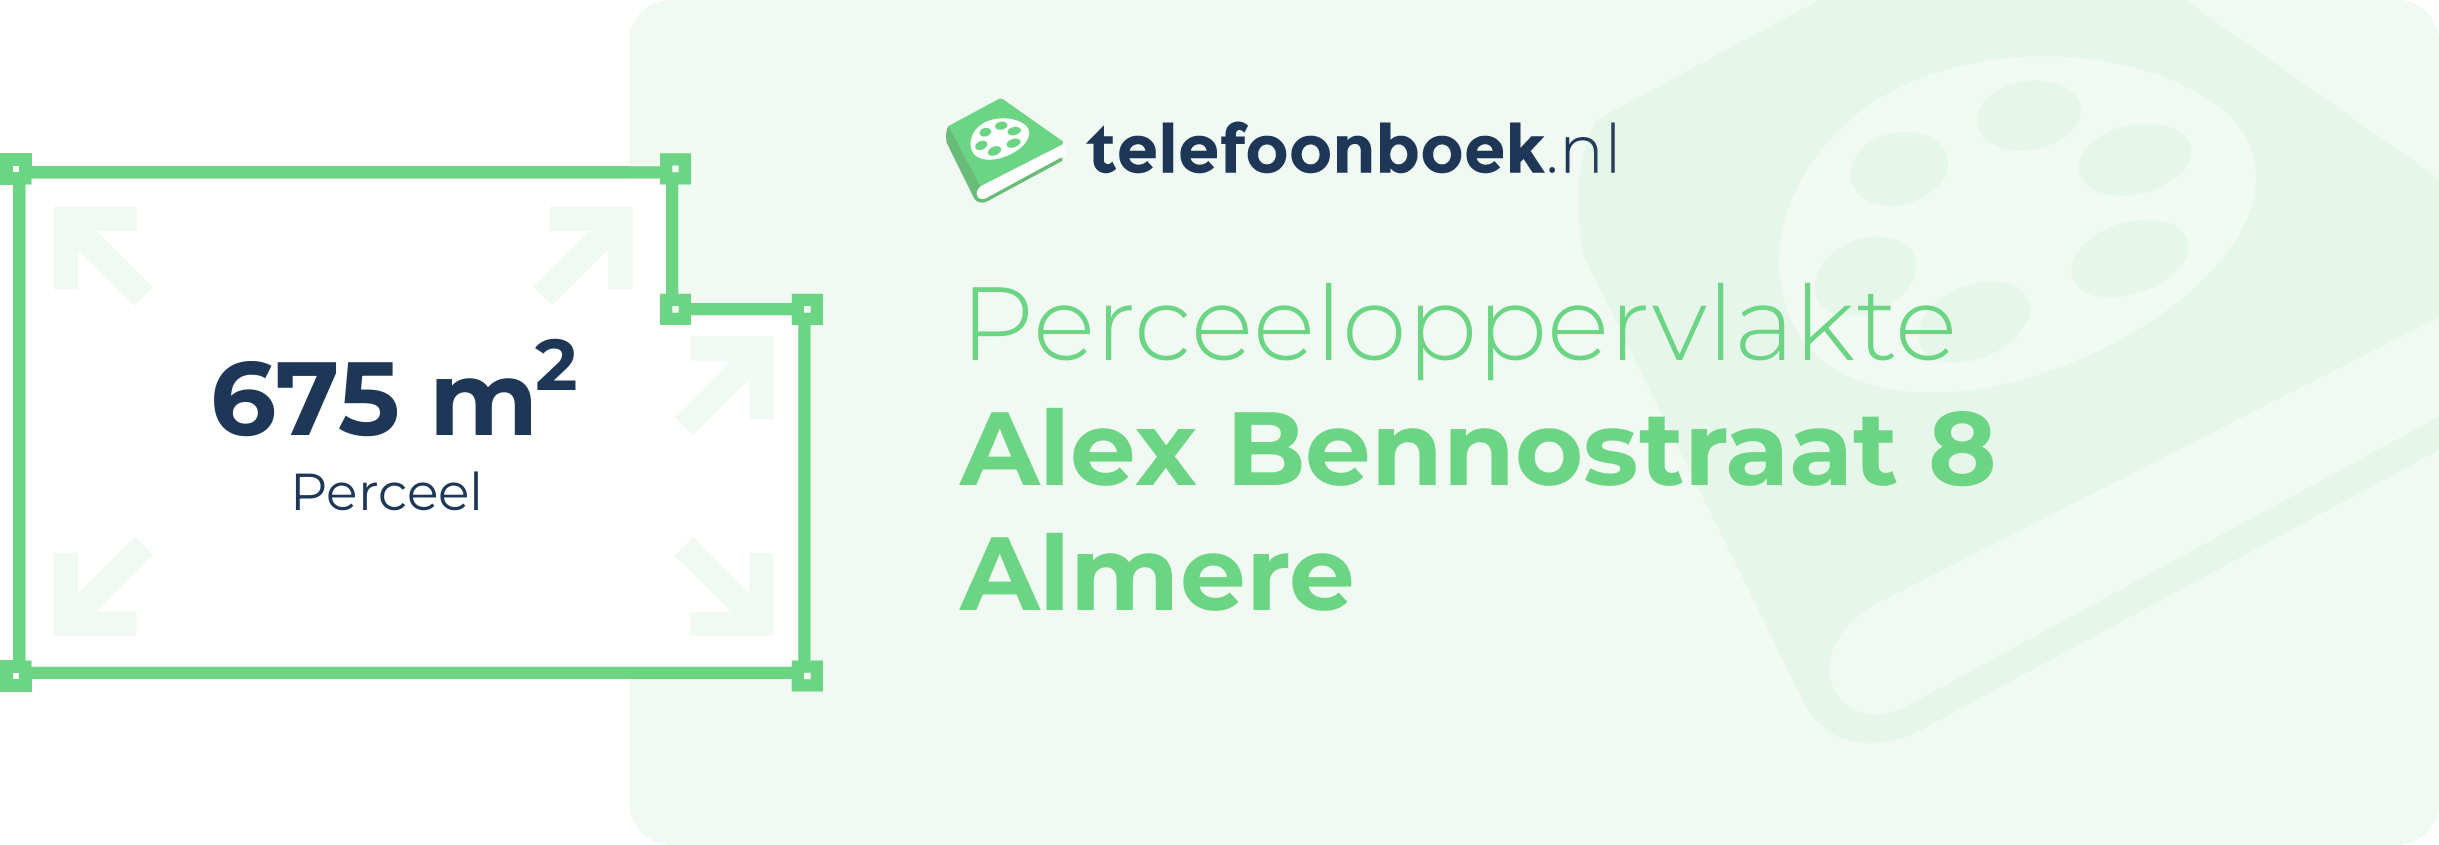 Perceeloppervlakte Alex Bennostraat 8 Almere